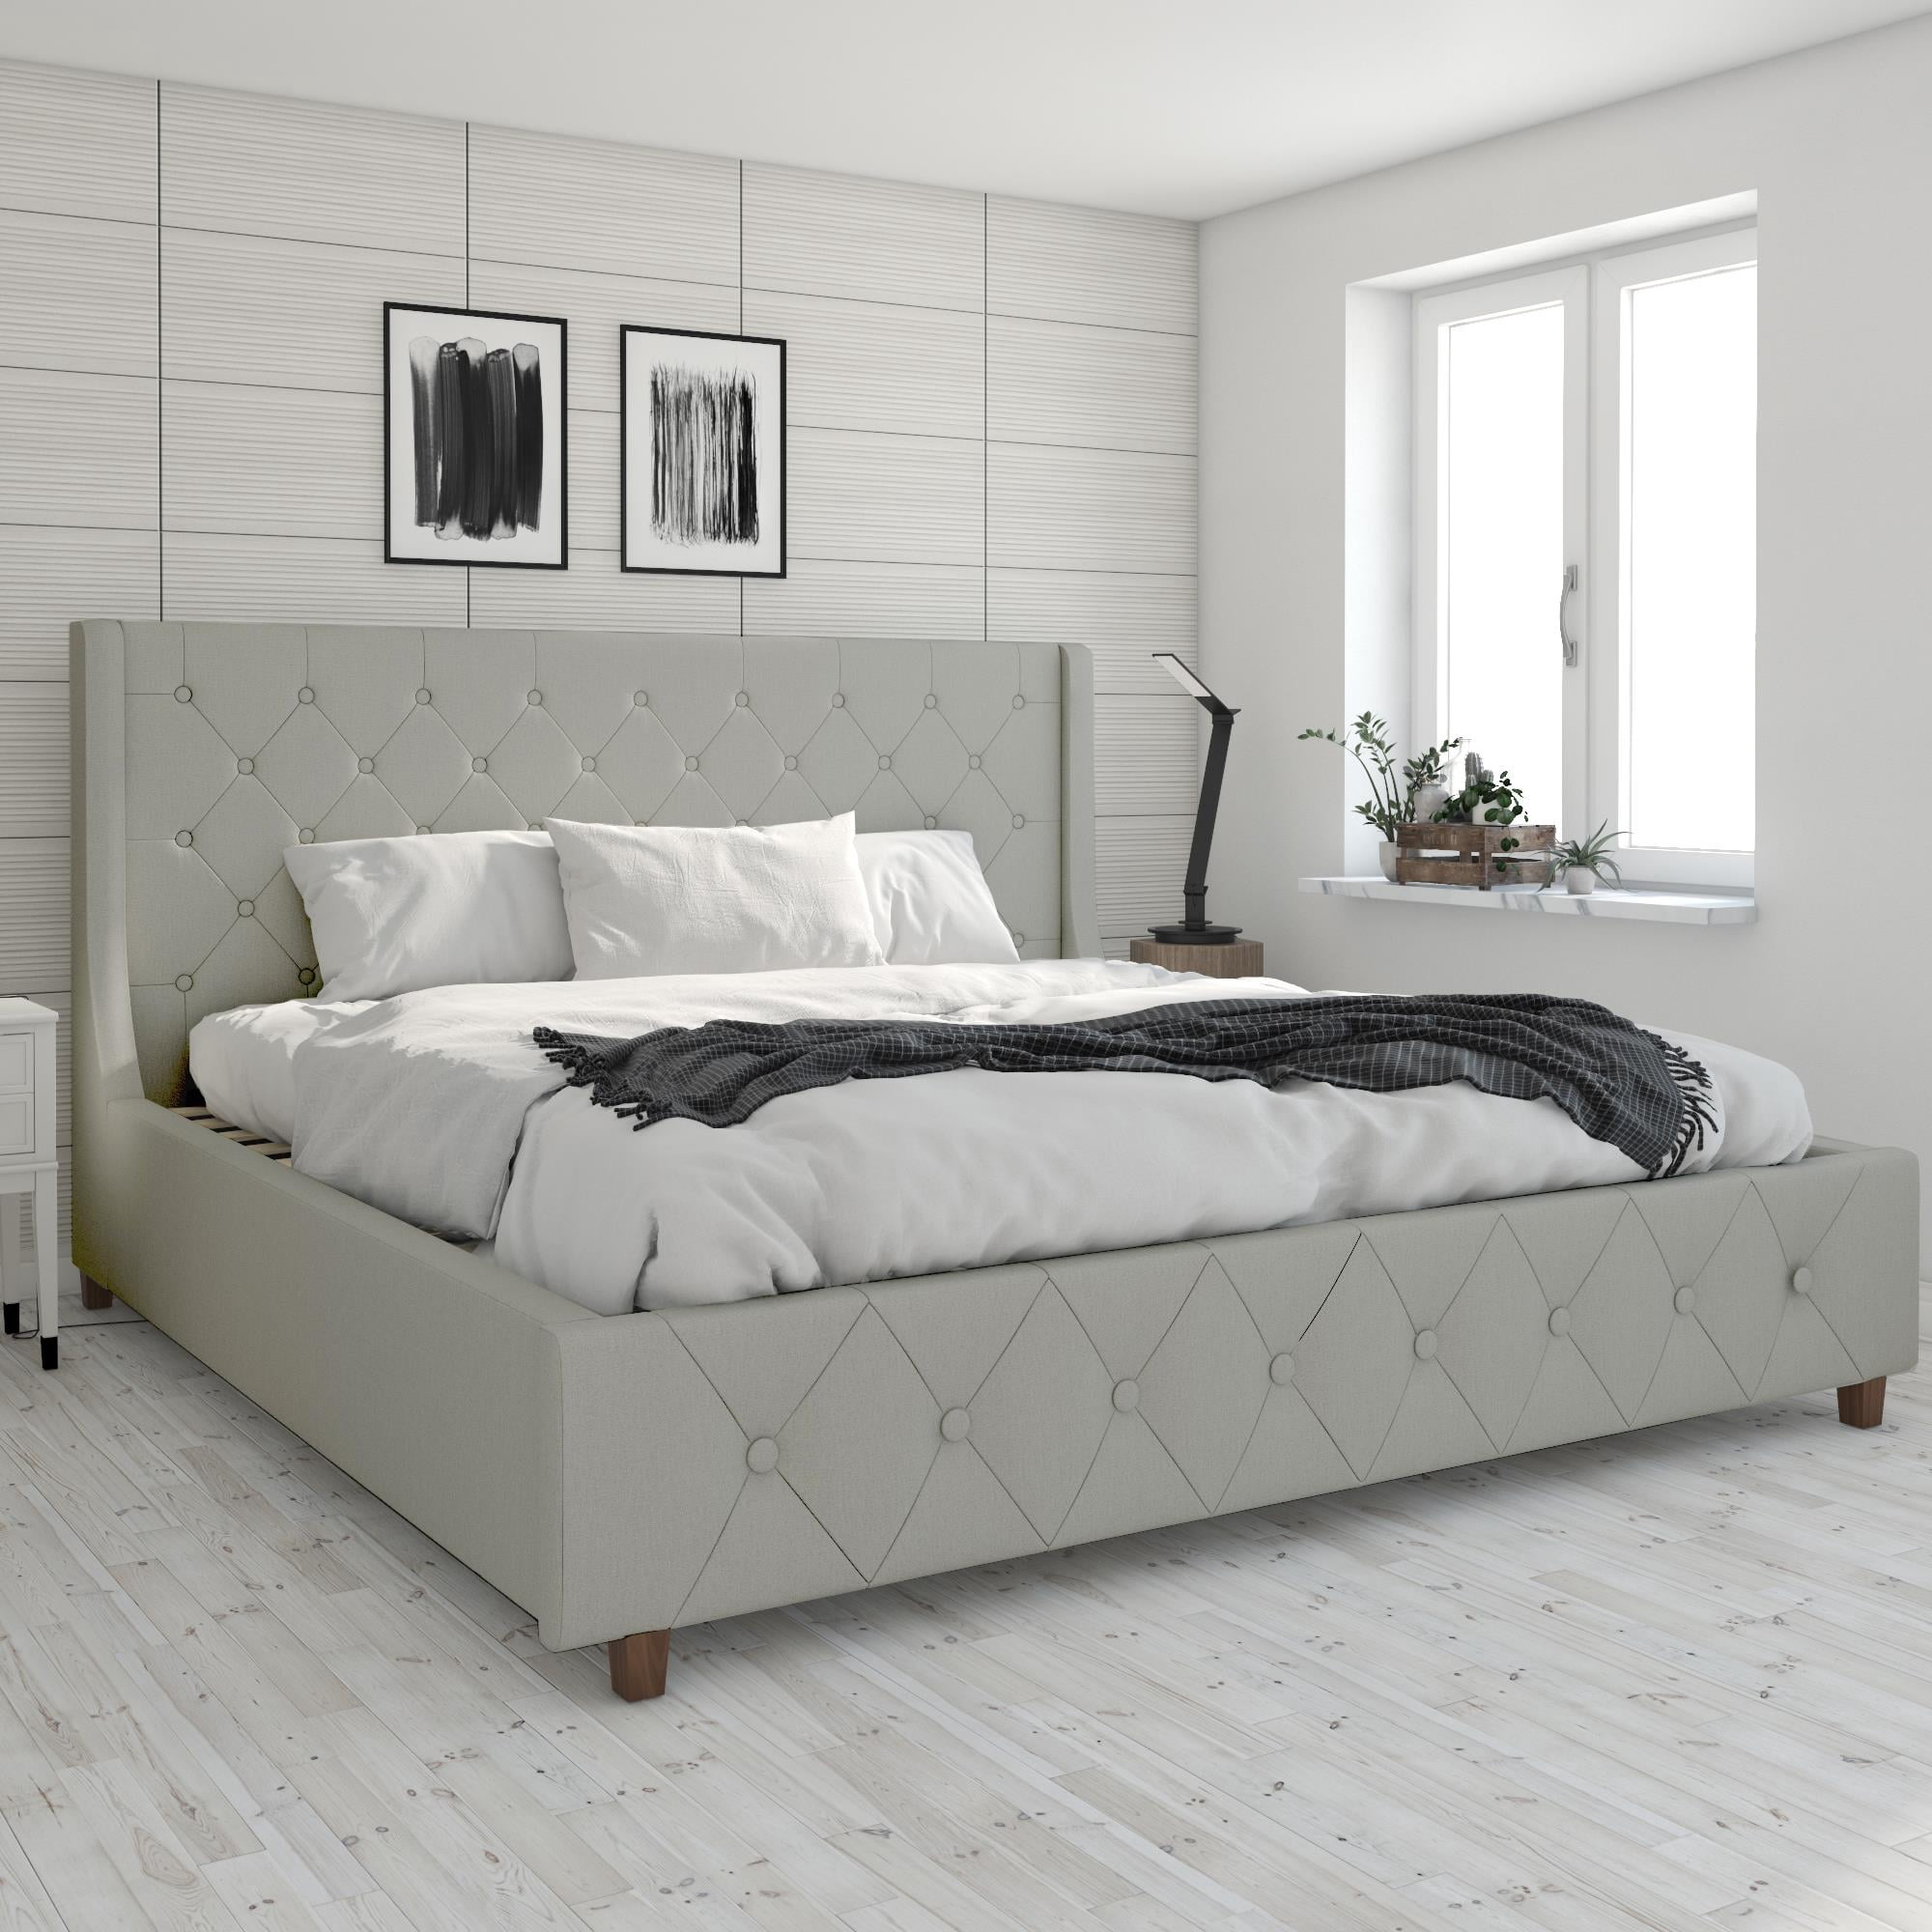 CosmoLiving by Cosmopolitan Mercer Upholstered Platform Bed